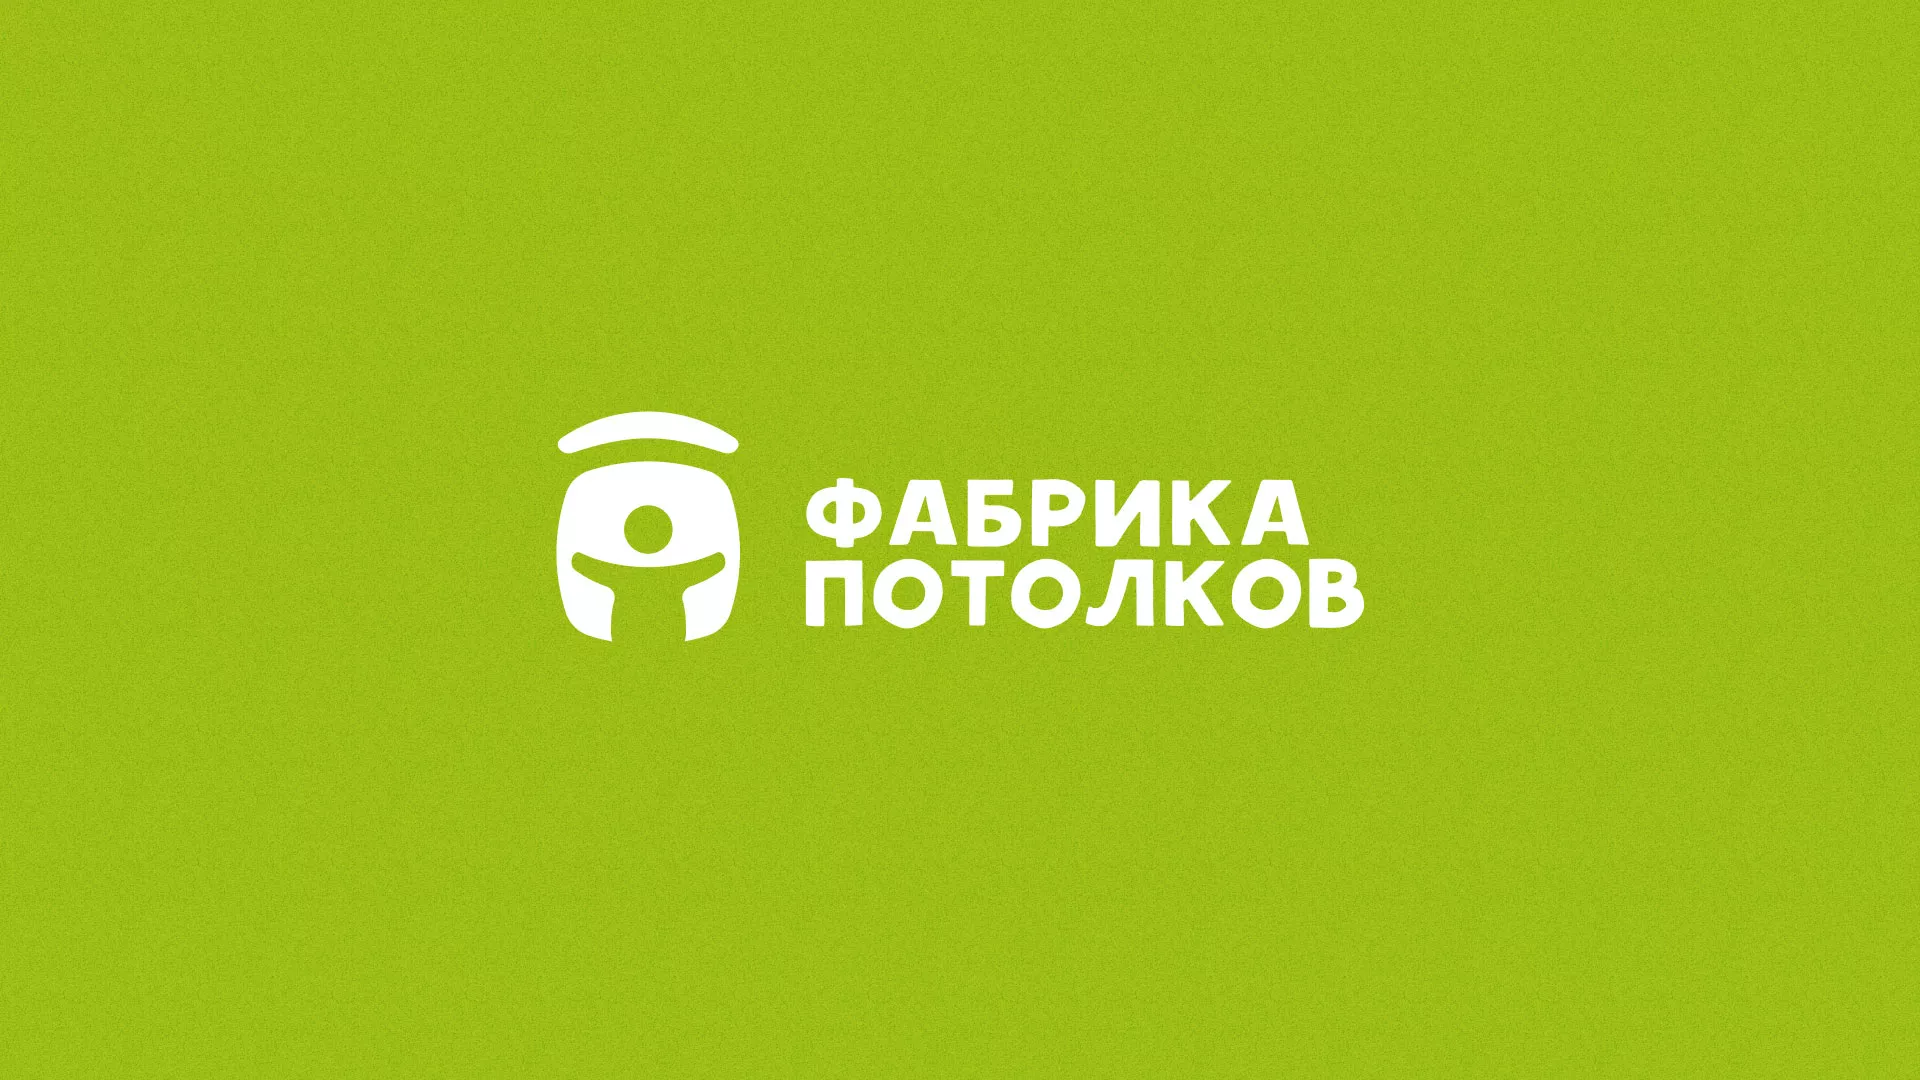 Разработка логотипа для производства натяжных потолков в Пушкине